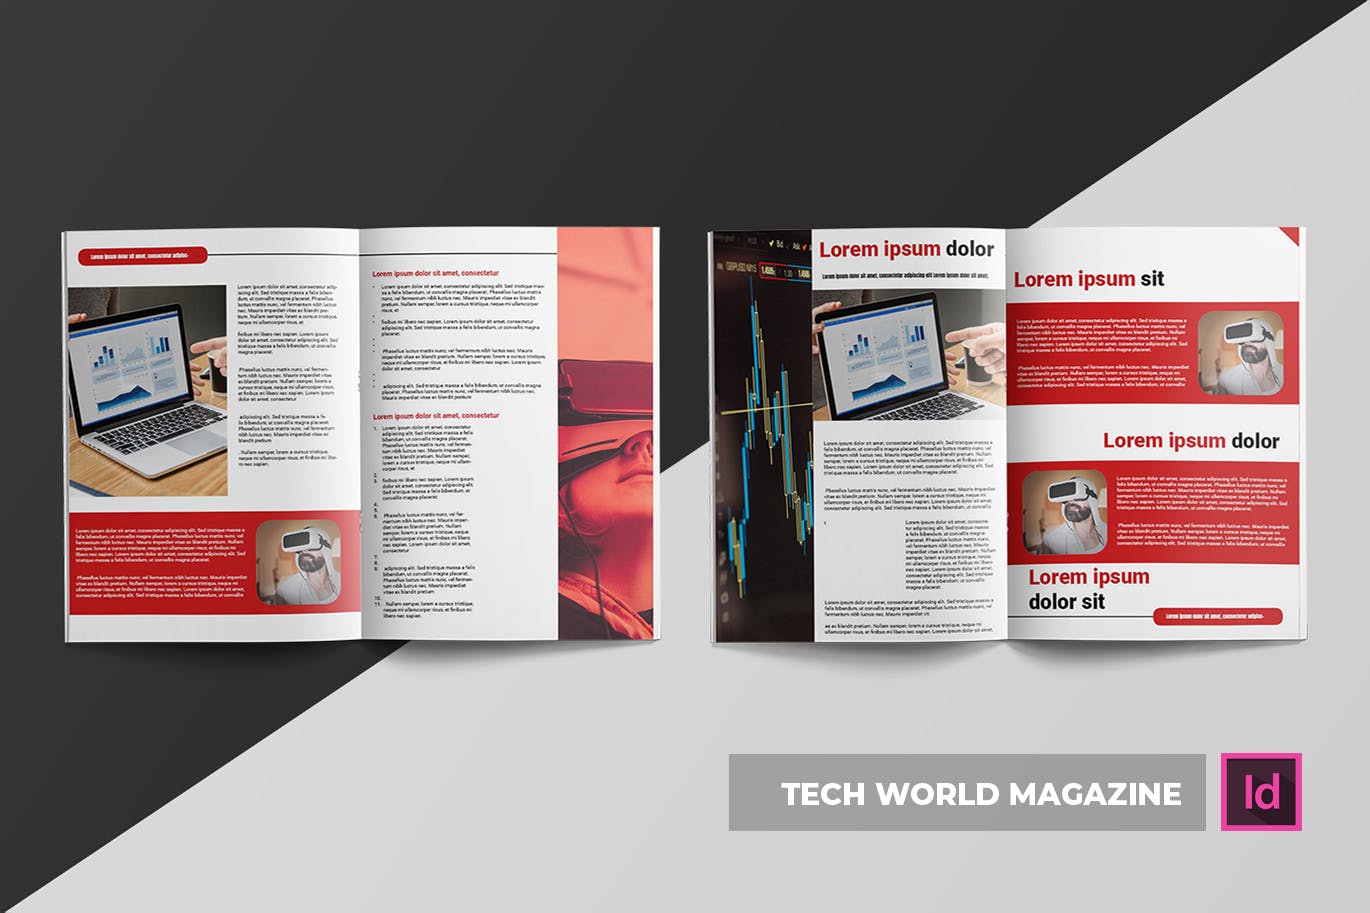 科技世界杂志版式设计模板 Tech World | Magazine Template插图(3)